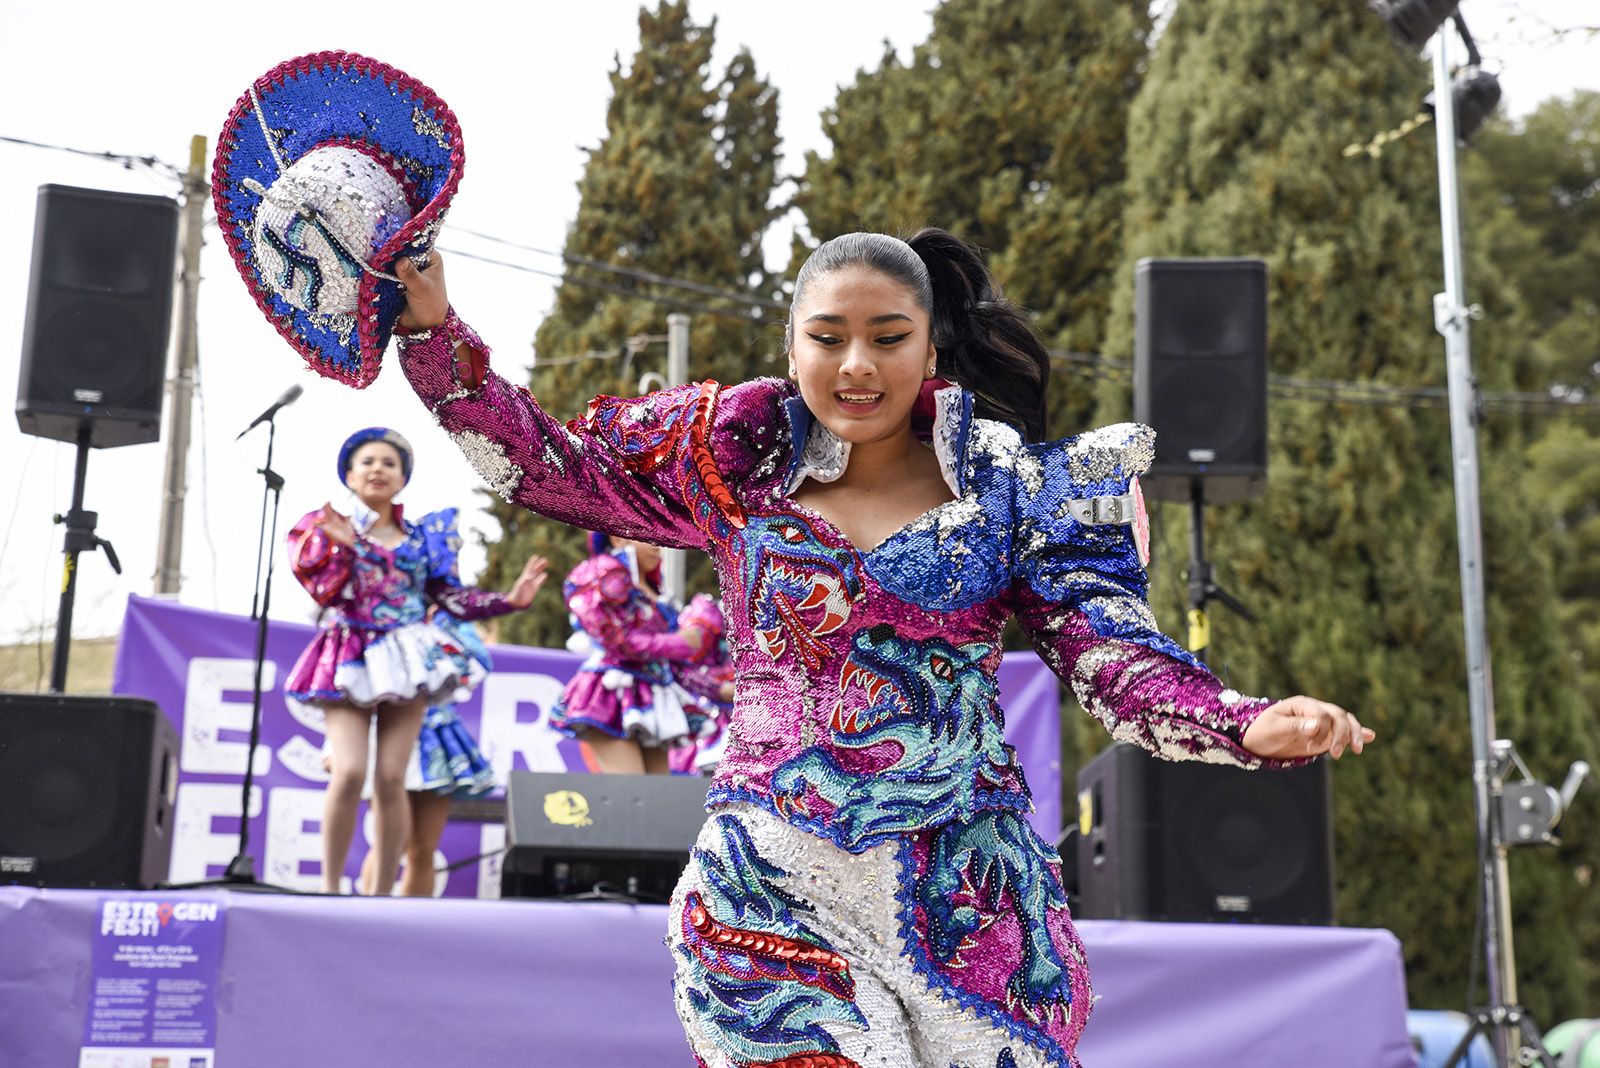 Actuació de dansa a càrrec de l'associació folklòrica i cultural de Bolívia Caporales "La Fraternidad". ESTROGENFEST. Foto: Bernat Millet.